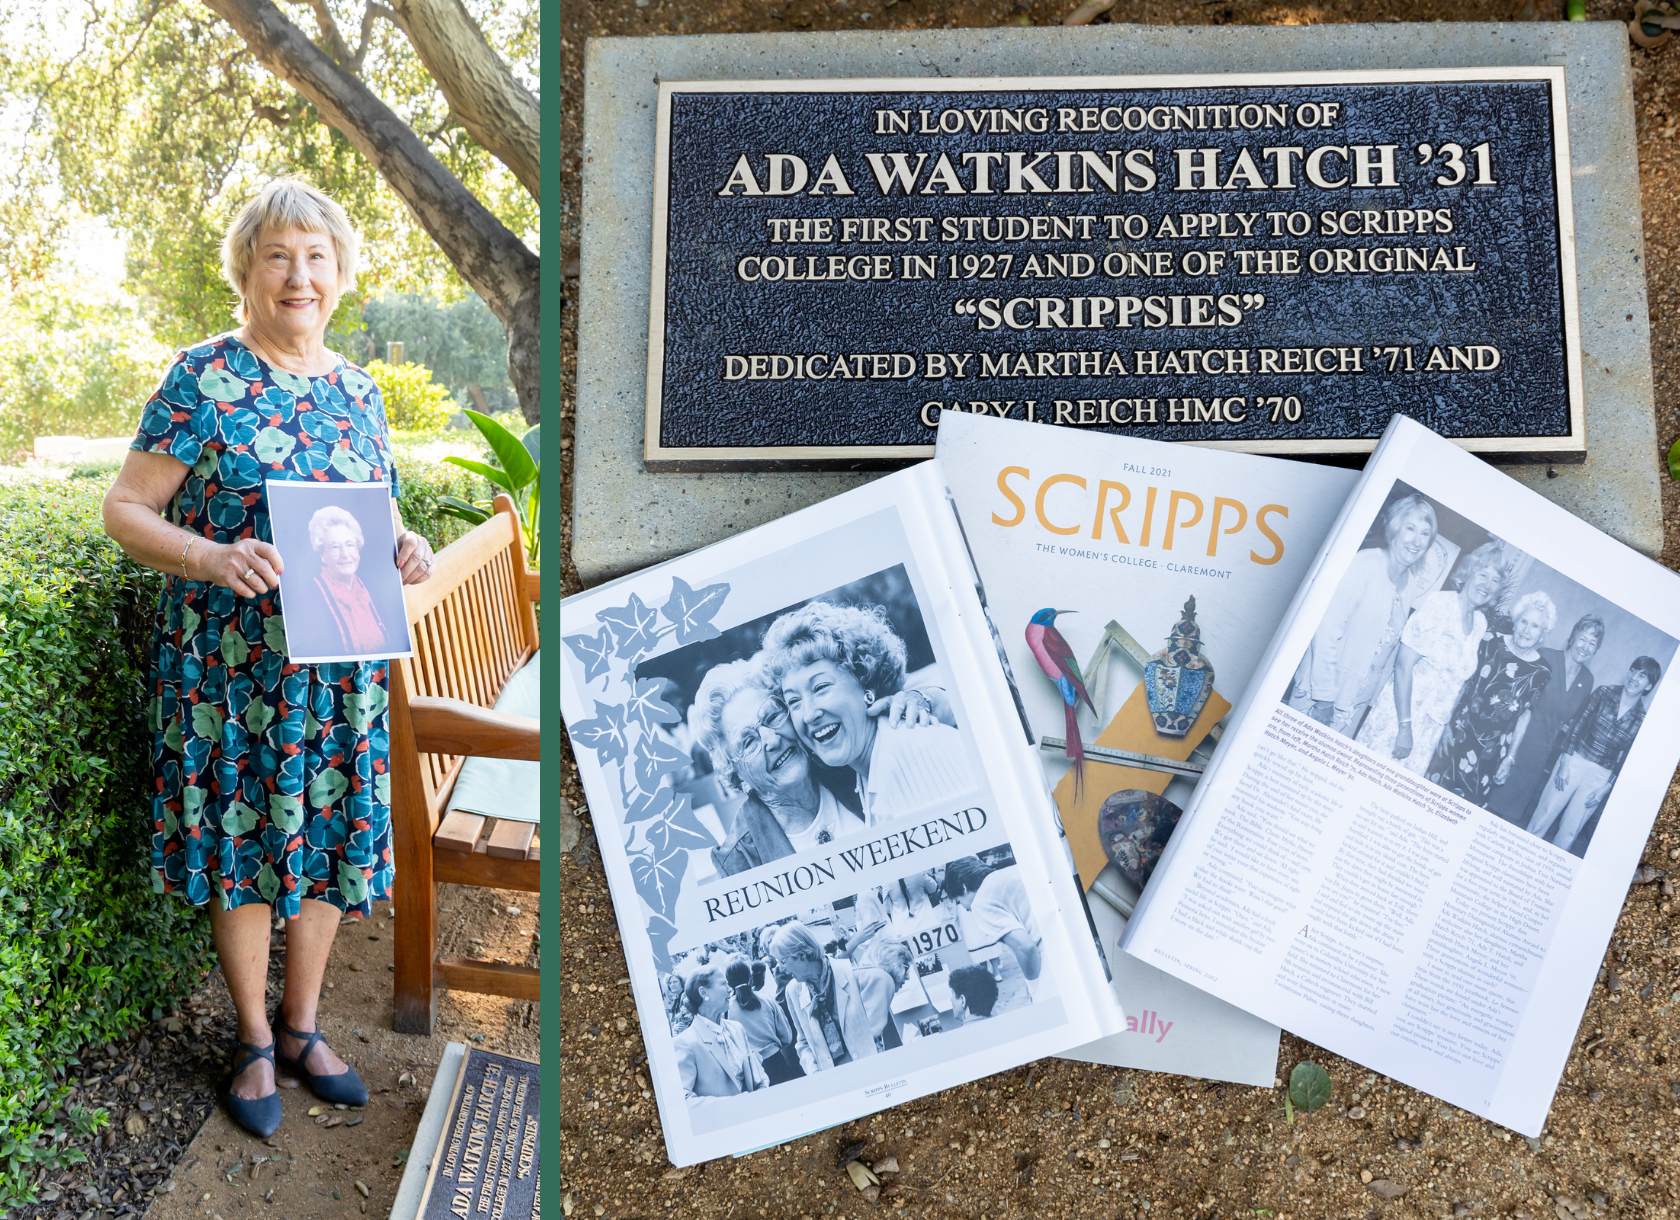 Martha Hatch Reich '71 with Campus Dedication